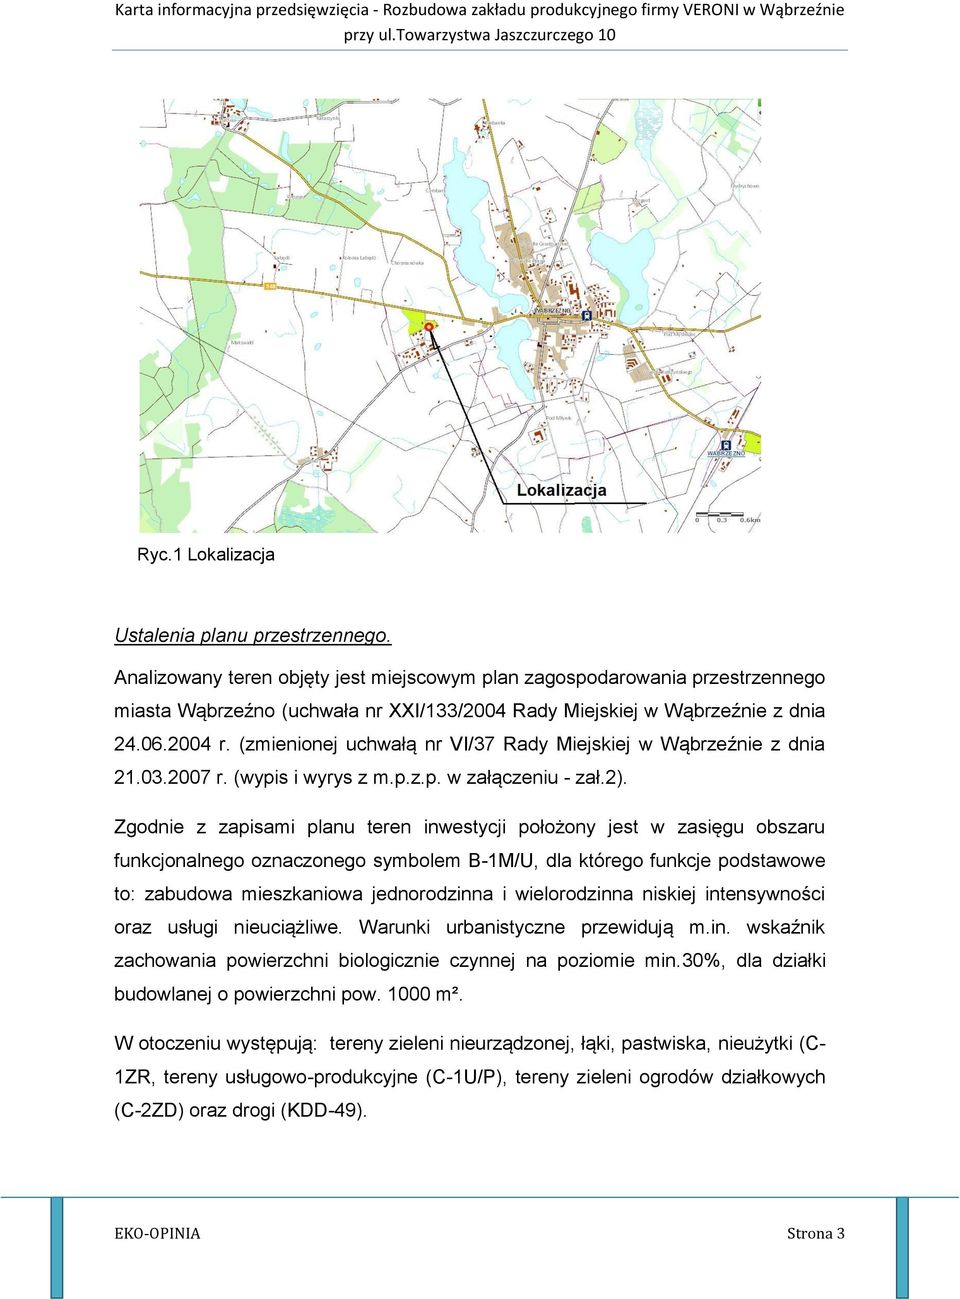 (zmienionej uchwałą nr VI/37 Rady Miejskiej w Wąbrzeźnie z dnia 21.03.2007 r. (wypis i wyrys z m.p.z.p. w załączeniu - zał.2).